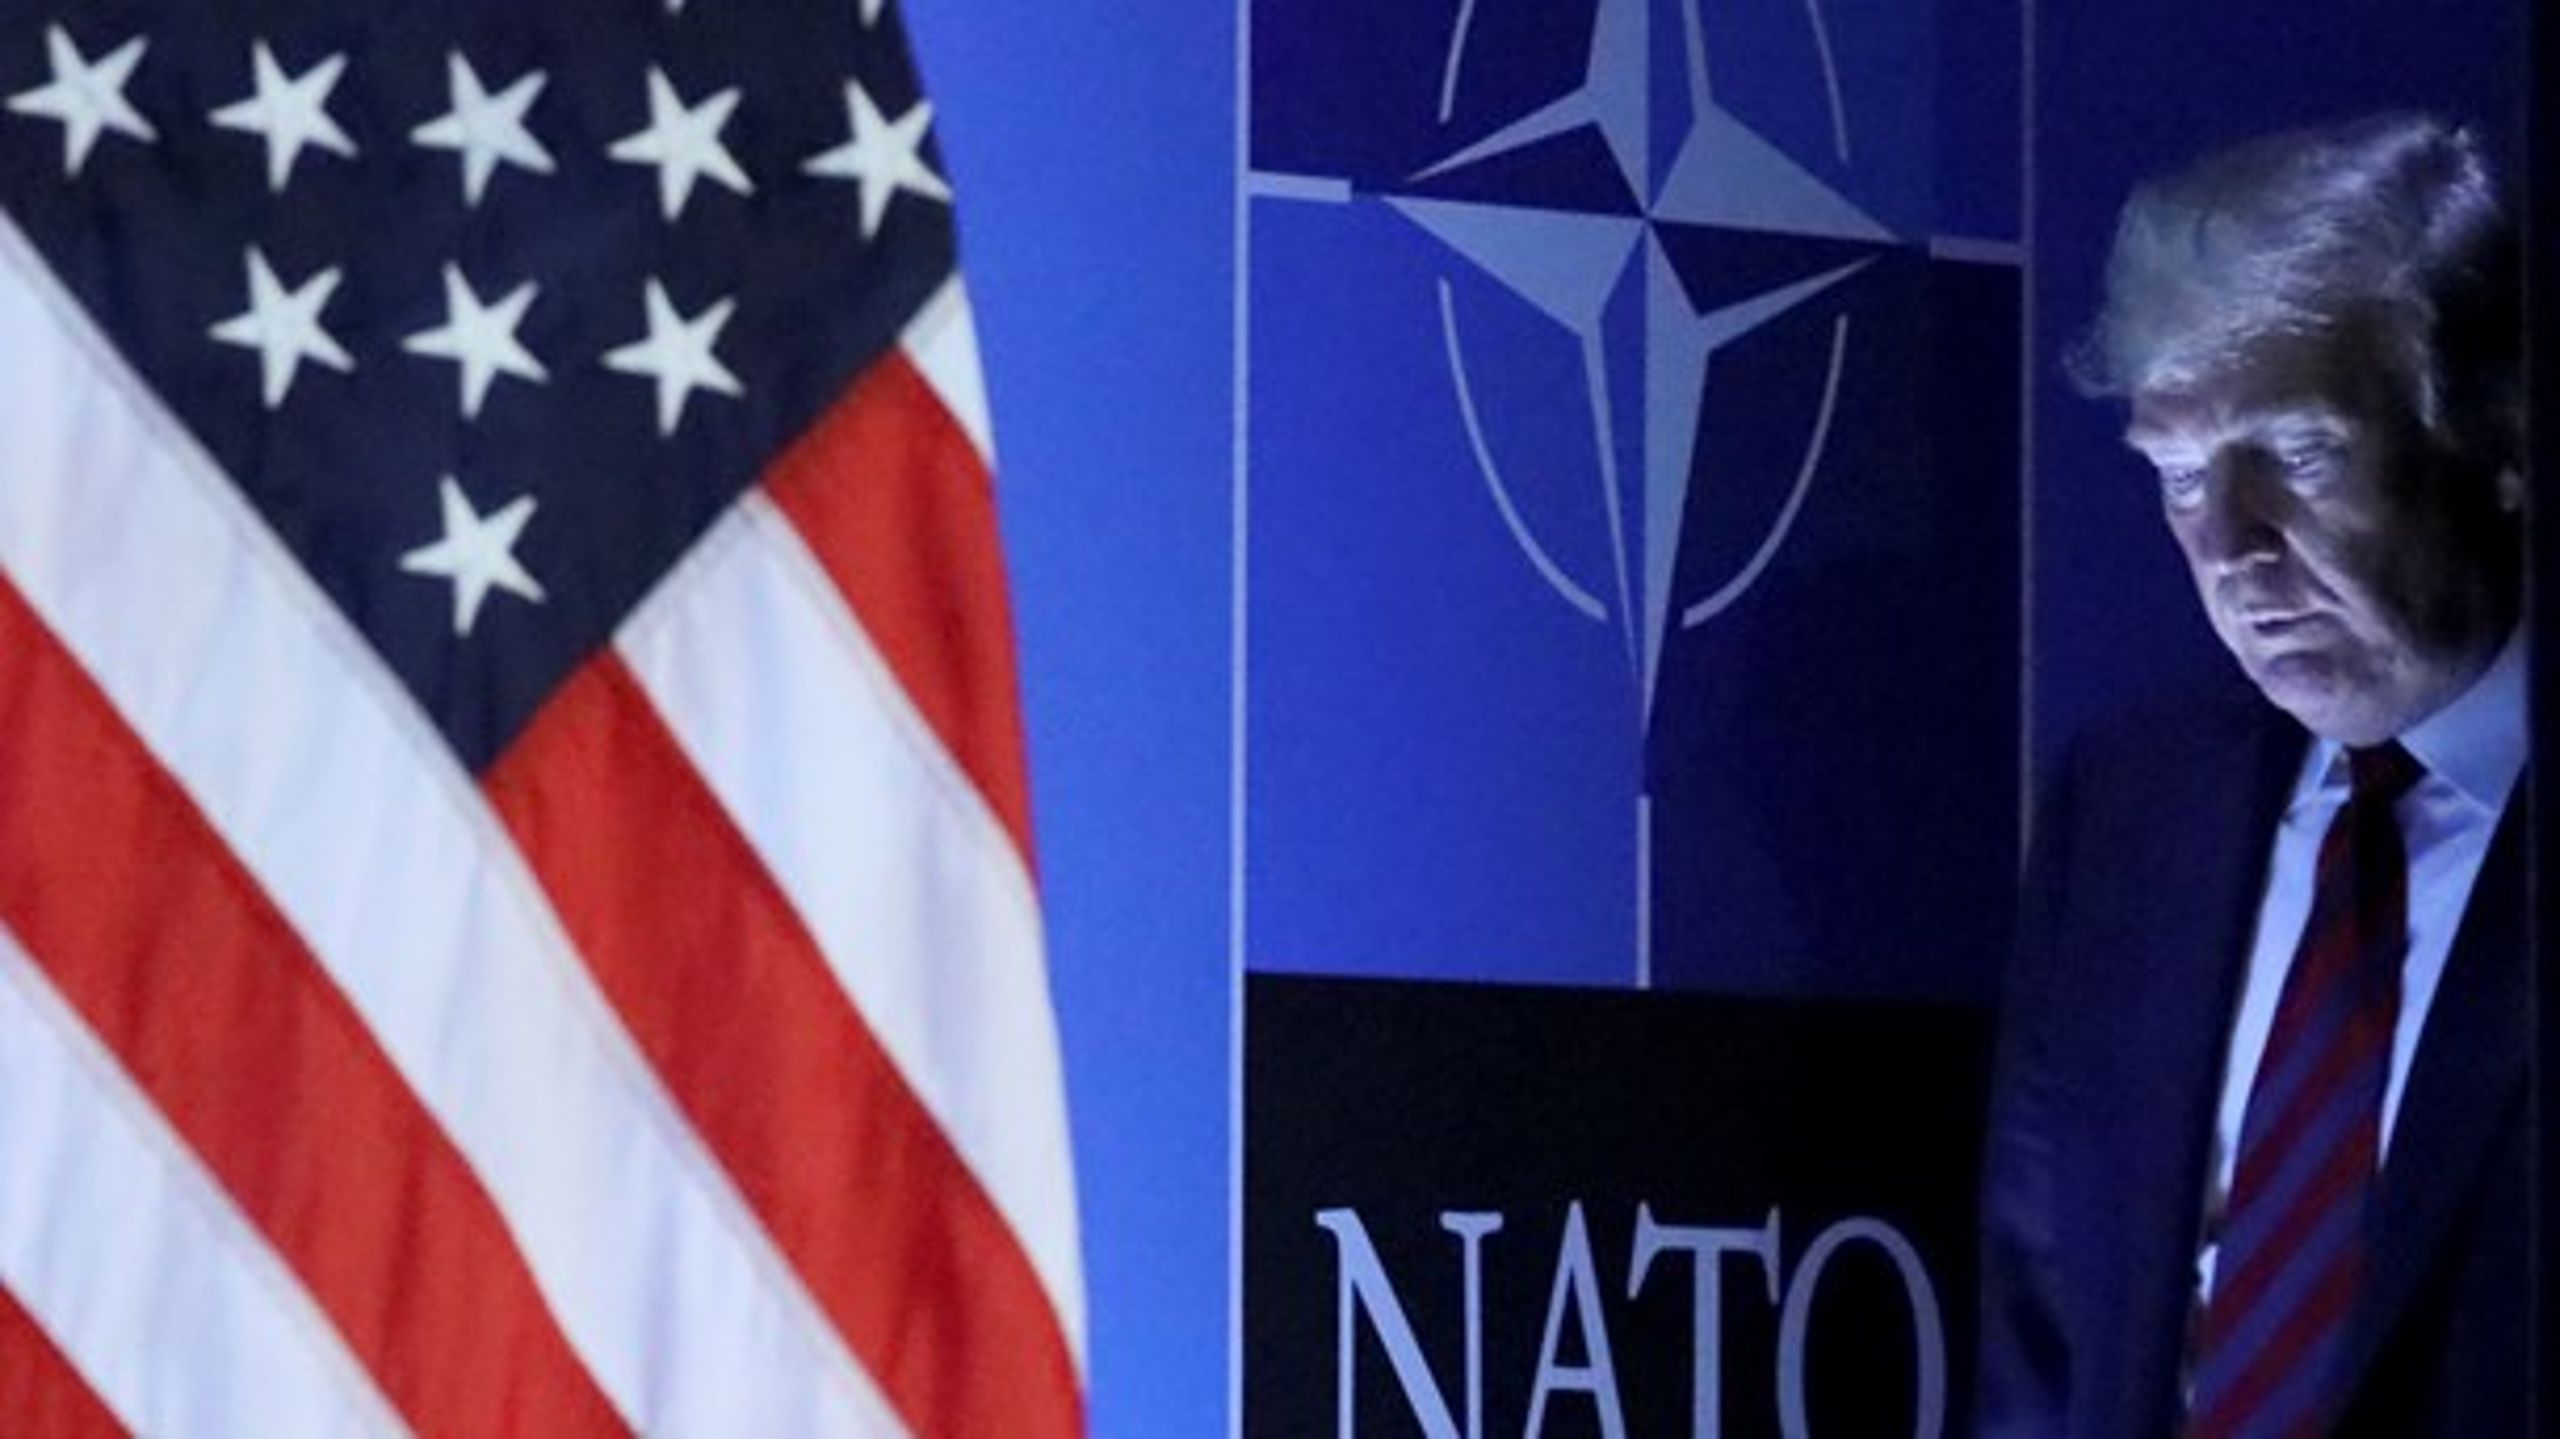 Trump har sået tvivl om den amerikanske motivation i forhold til Natos musketered, skriver Jens Christian Grøndahl.